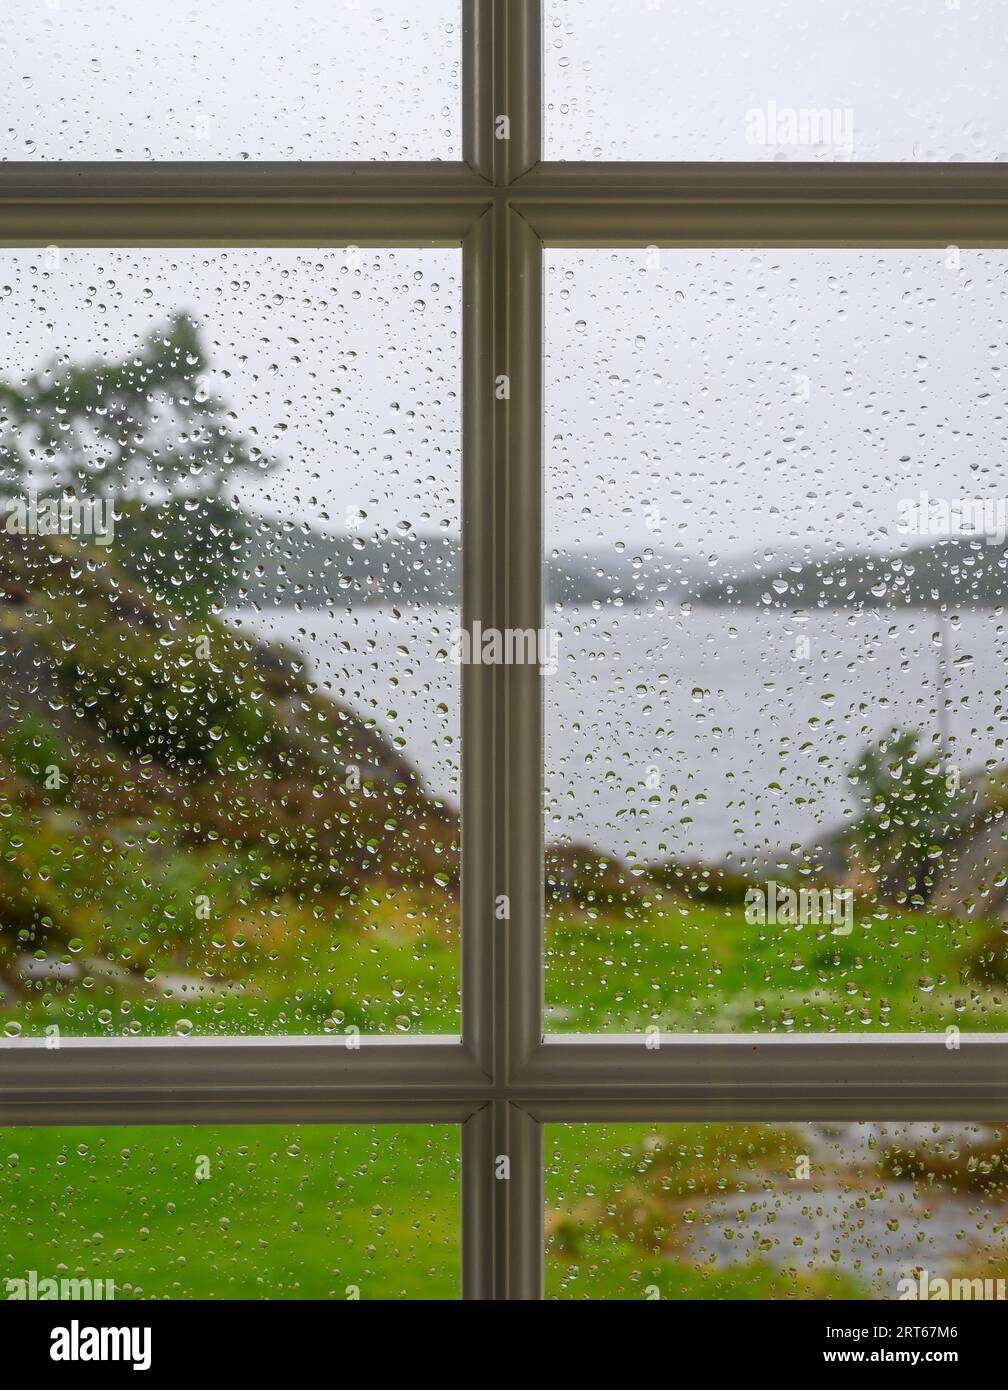 Vista dall'interno verso l'esterno: Vista del paesaggio sfocato (sfocato), del mare e delle isole attraverso una finestra piena di gocce di pioggia a fuoco. Telemark, Norvegia. Foto Stock